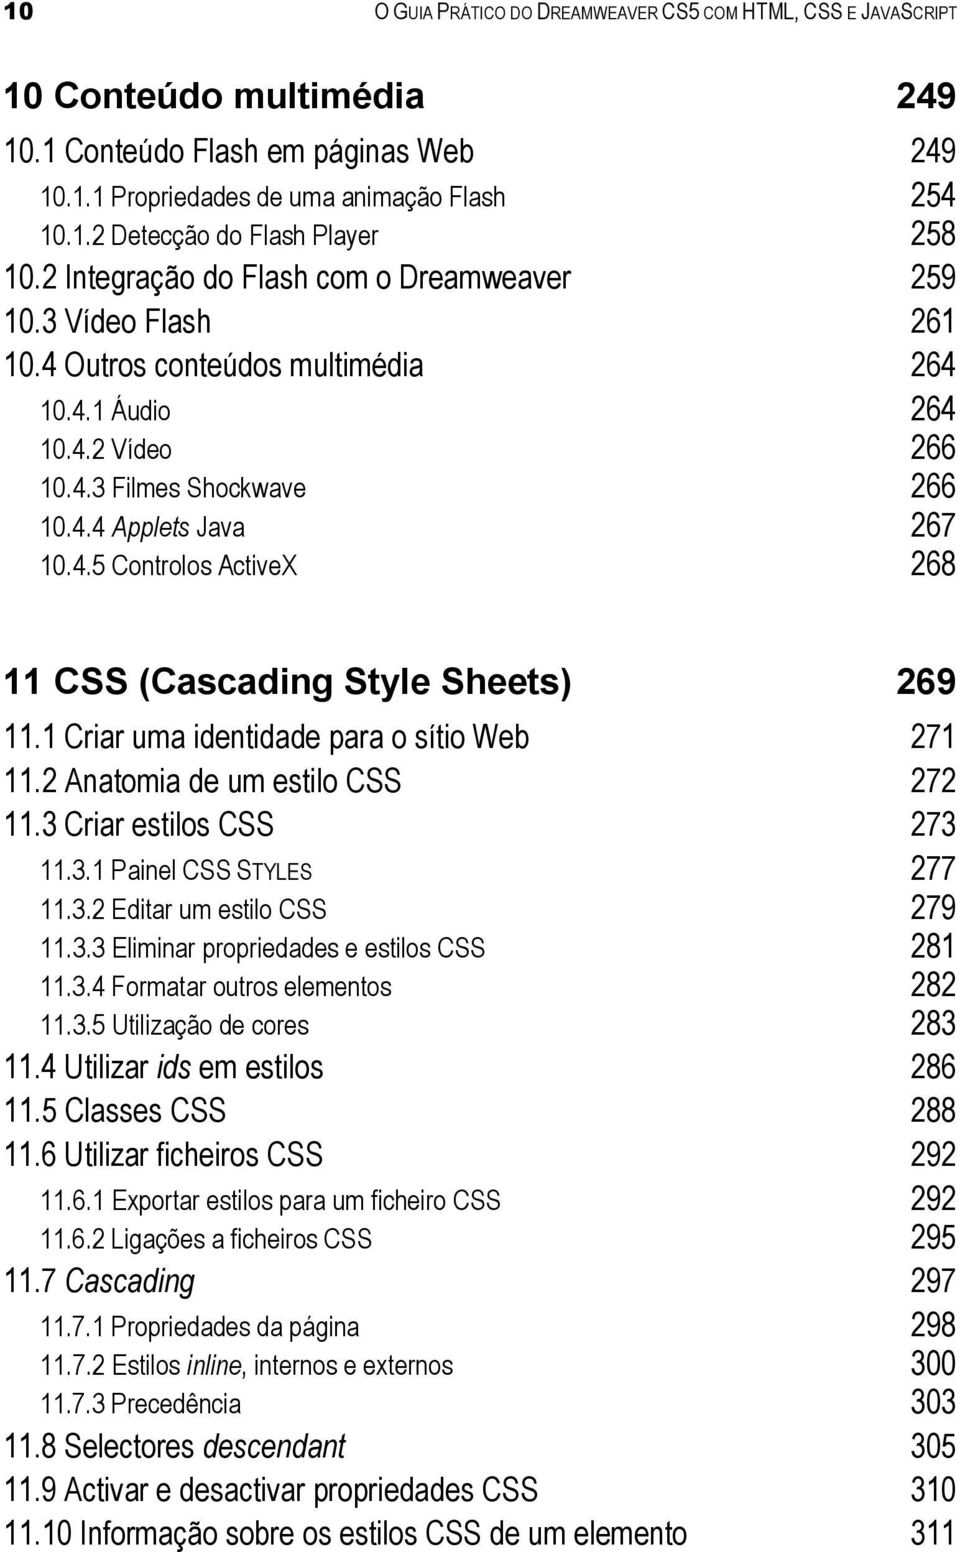 1 Criar uma identidade para o sítio Web 271 11.2 Anatomia de um estilo CSS 272 11.3 Criar estilos CSS 273 11.3.1 Painel CSS STYLES 277 11.3.2 Editar um estilo CSS 279 11.3.3 Eliminar propriedades e estilos CSS 281 11.